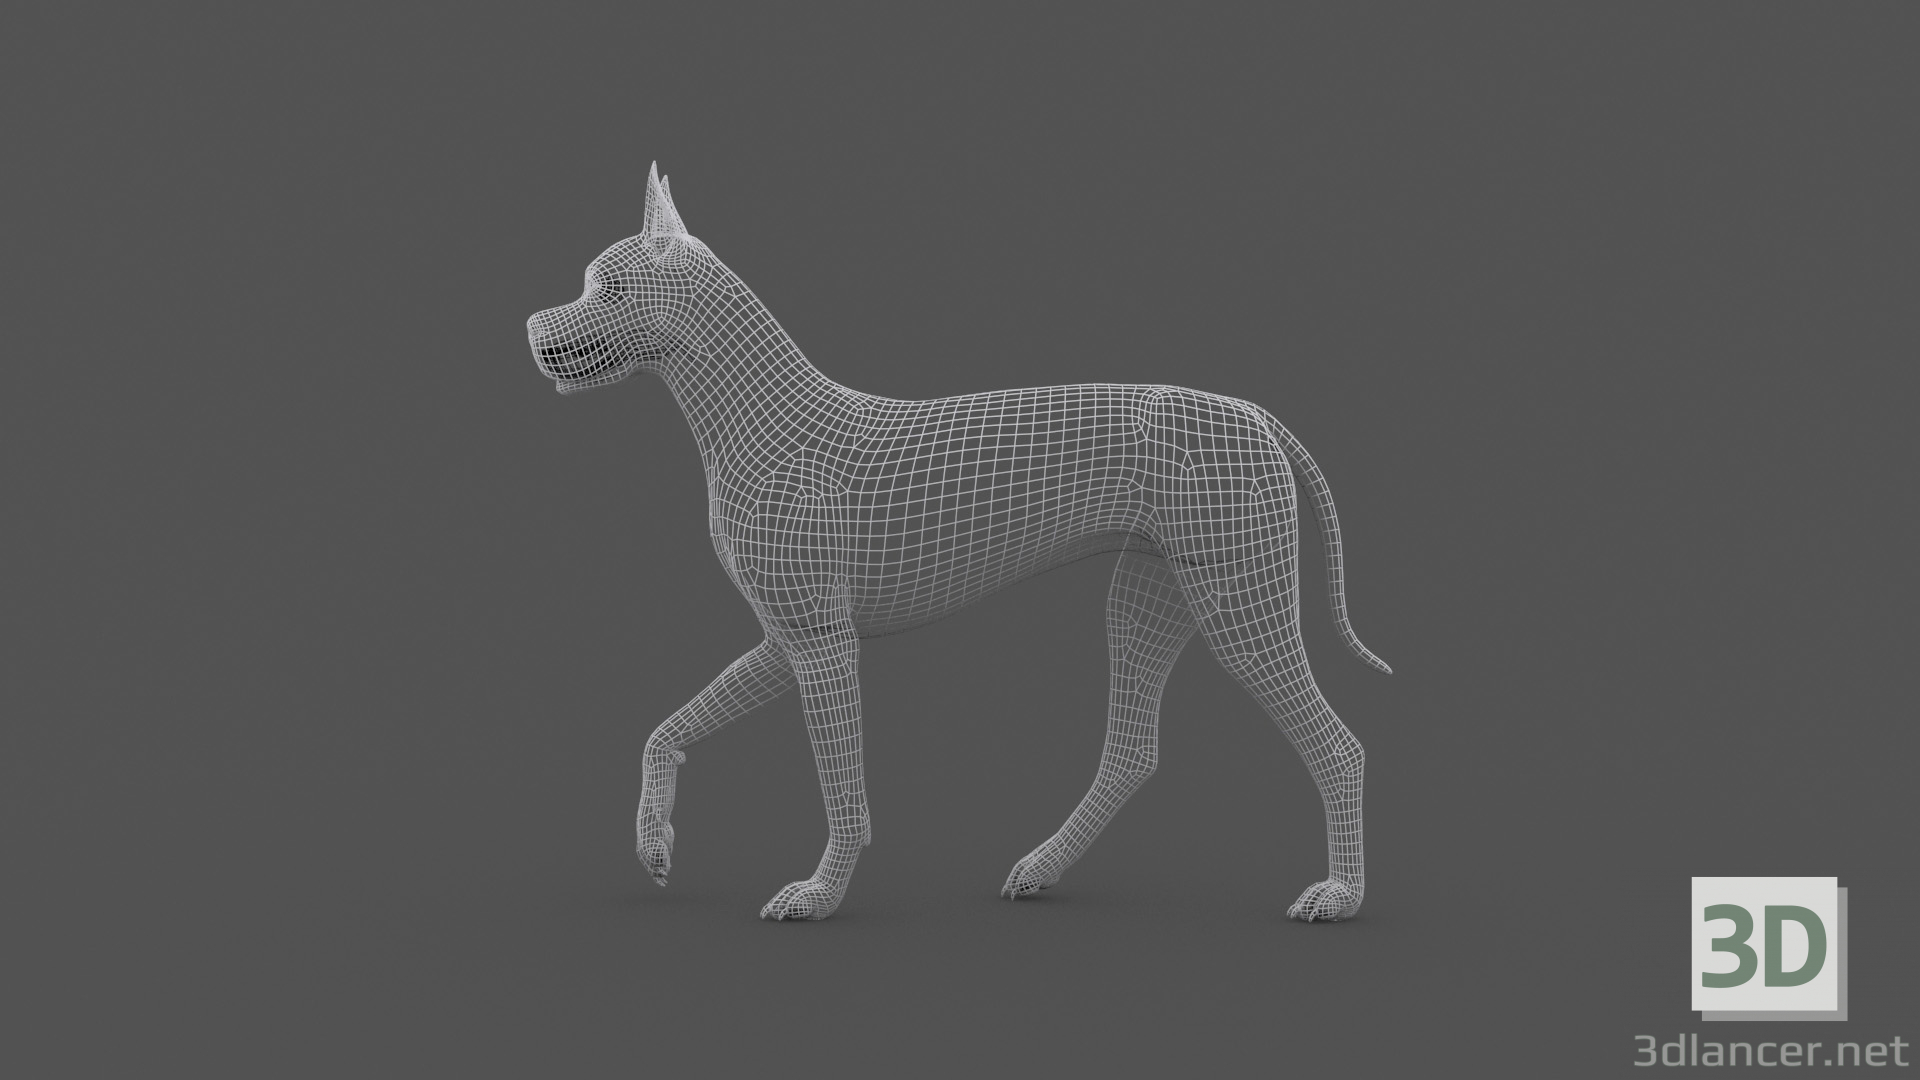 3d FDGD-001 Animation dog model buy - render